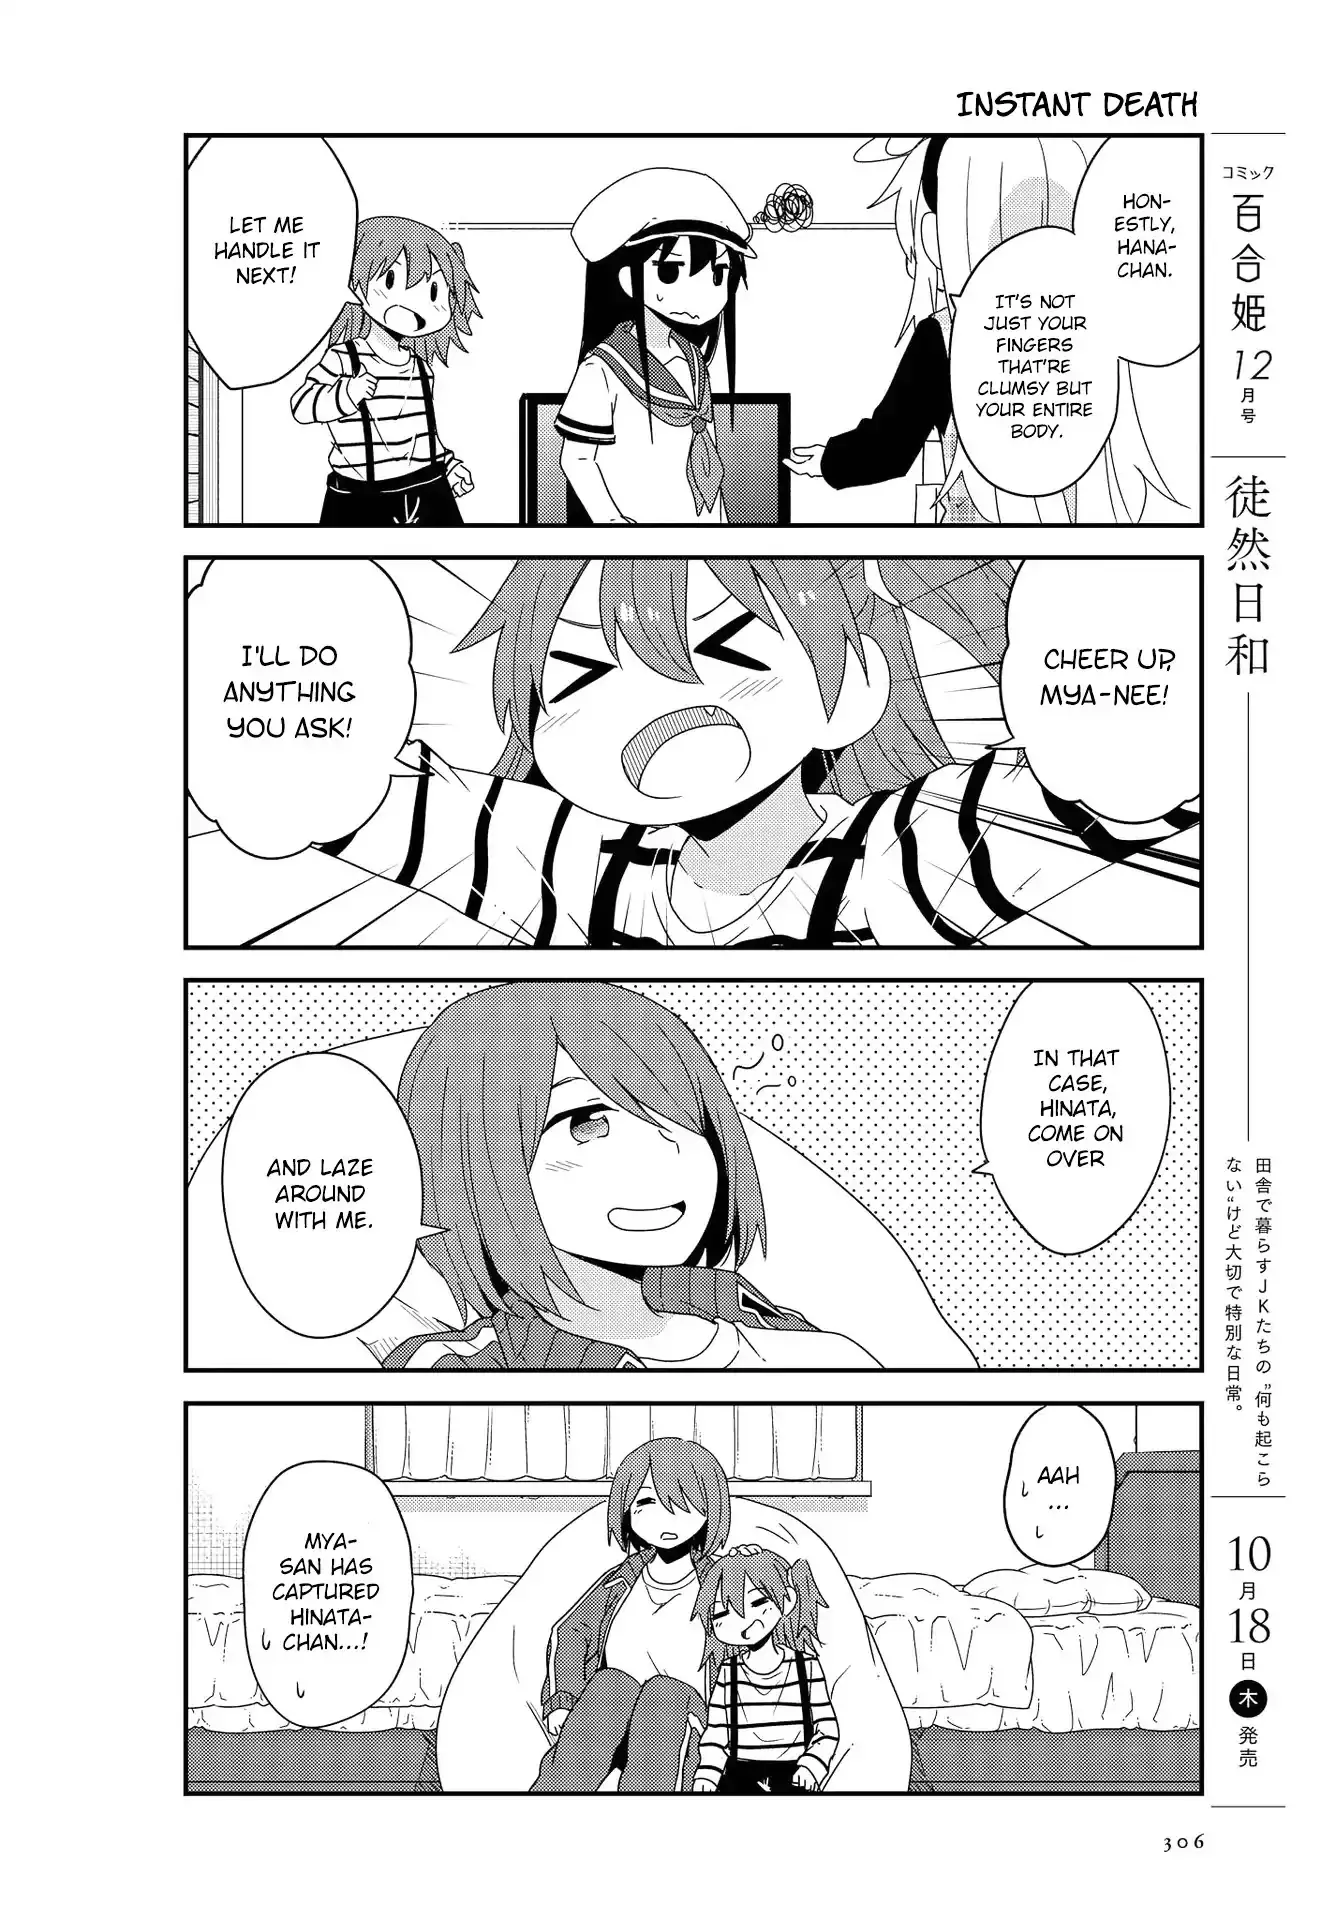 Watashi Ni Tenshi Ga Maiorita! - 37 page 10